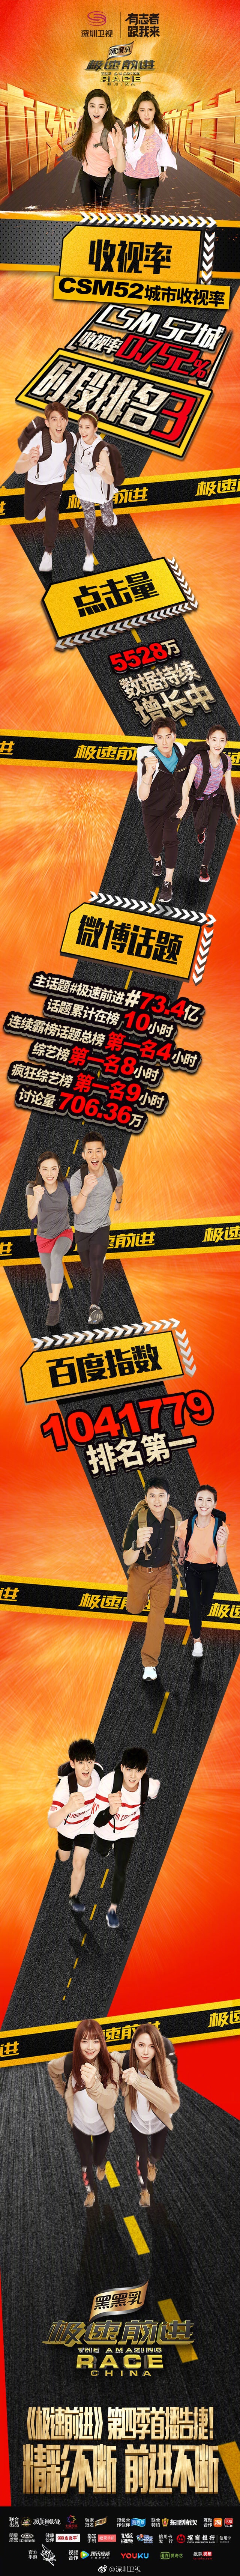 深圳卫视极速前进 第四季第一期正式开播